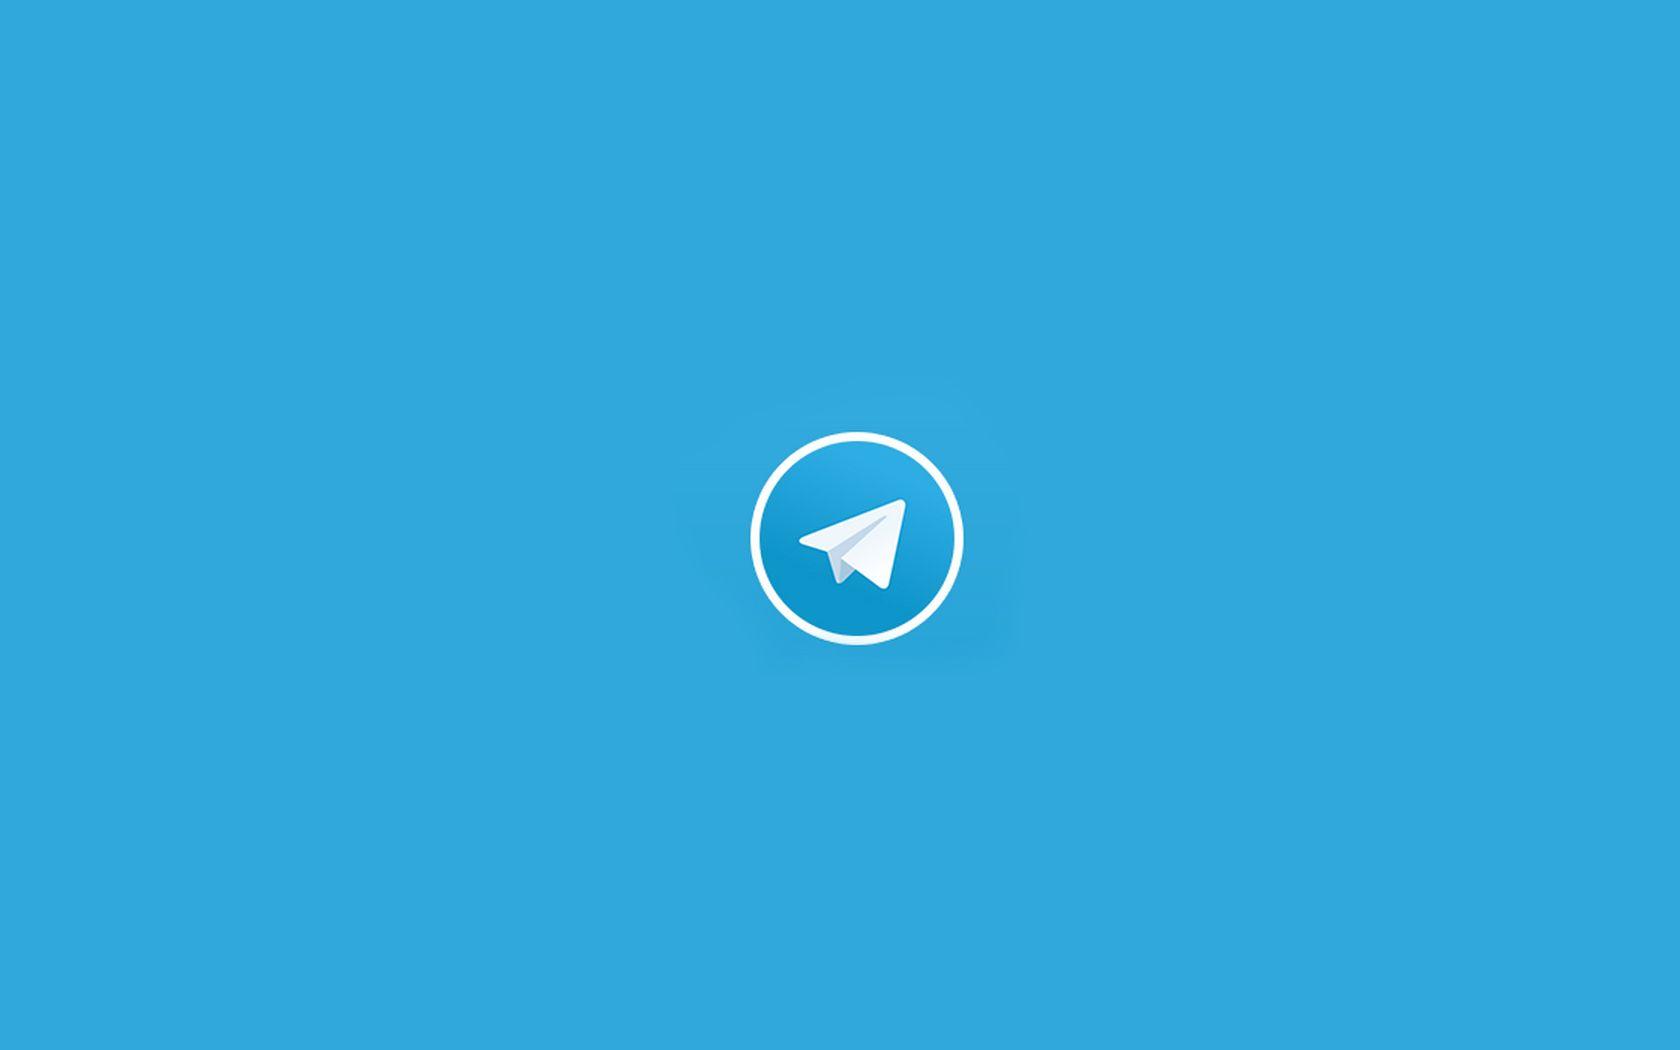 Messenger App Logo - Telegram Messenger App Design. - D E S I G N - Inspiration. App